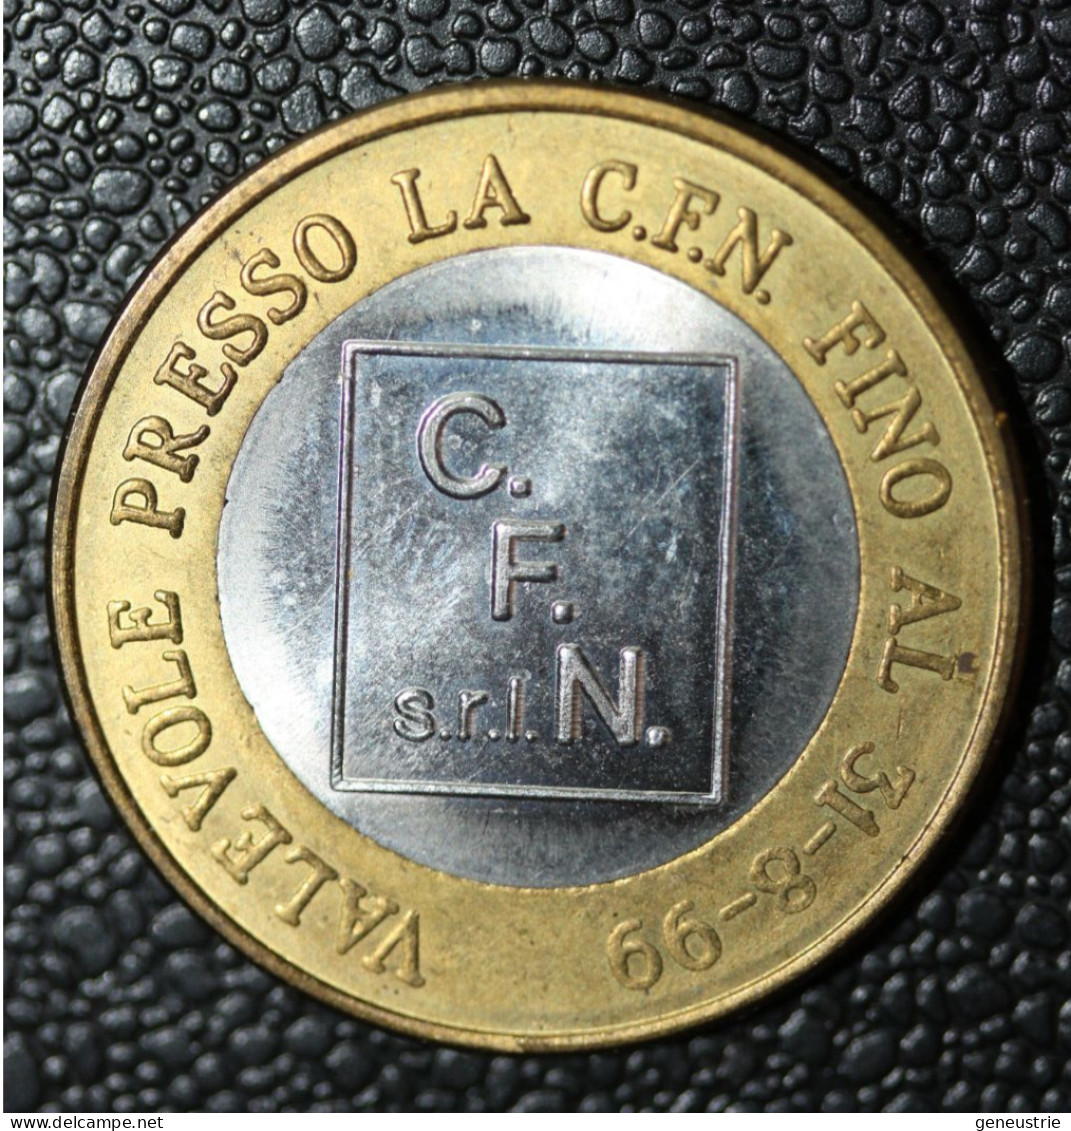 Pièce De 1 Euro Provisoire De La Société Italienne C.F.N. S.r.l. Valable Jusqu'au 31-08-1999" - Italien